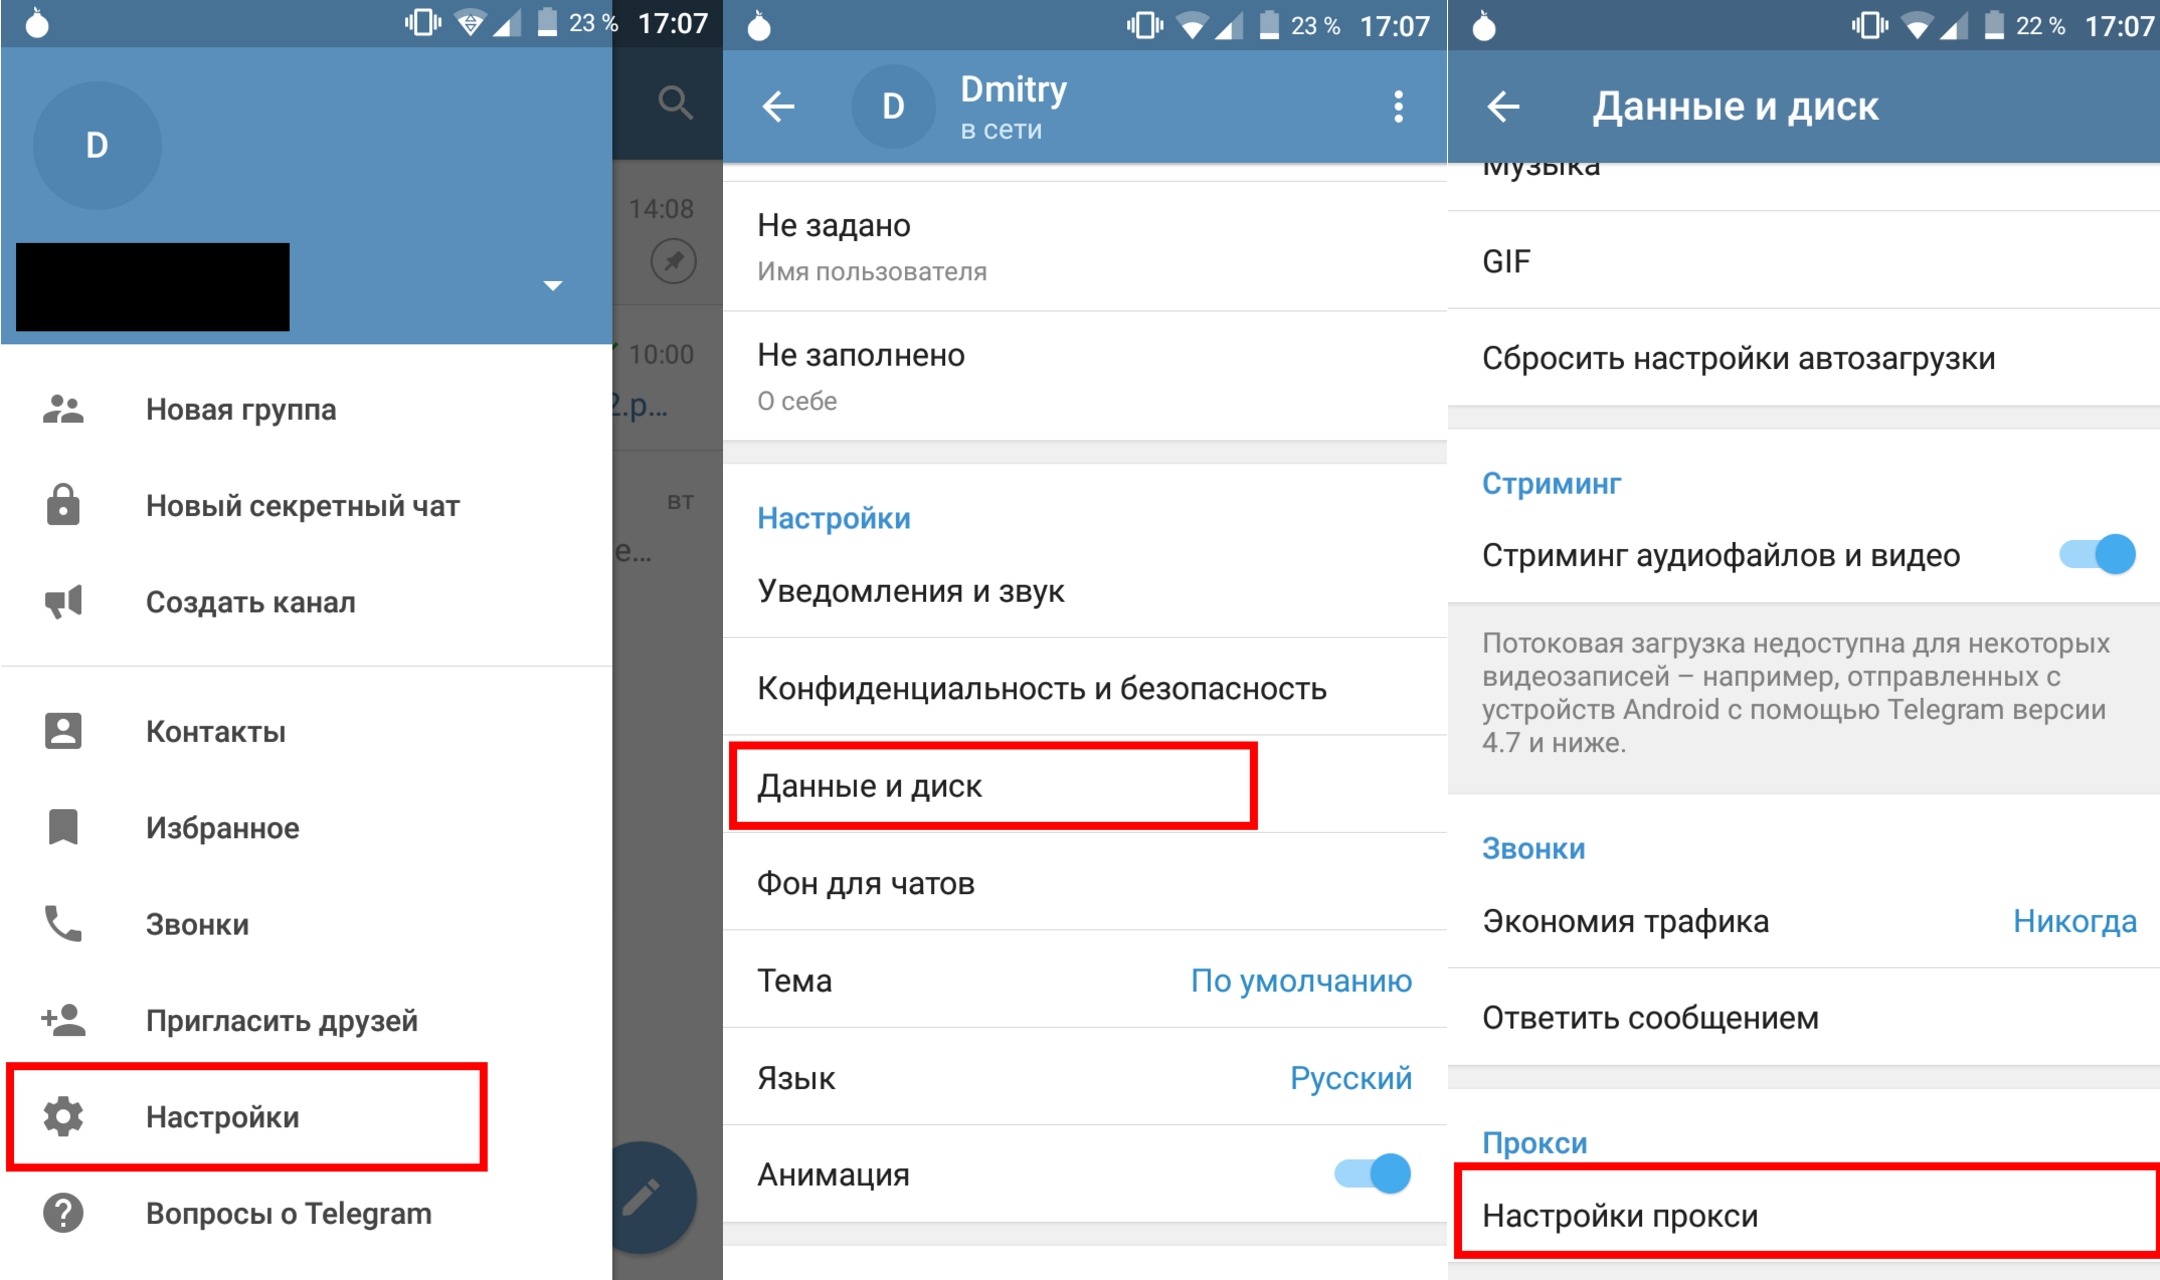 Как включить русский в телеграмме на андроиде фото 96